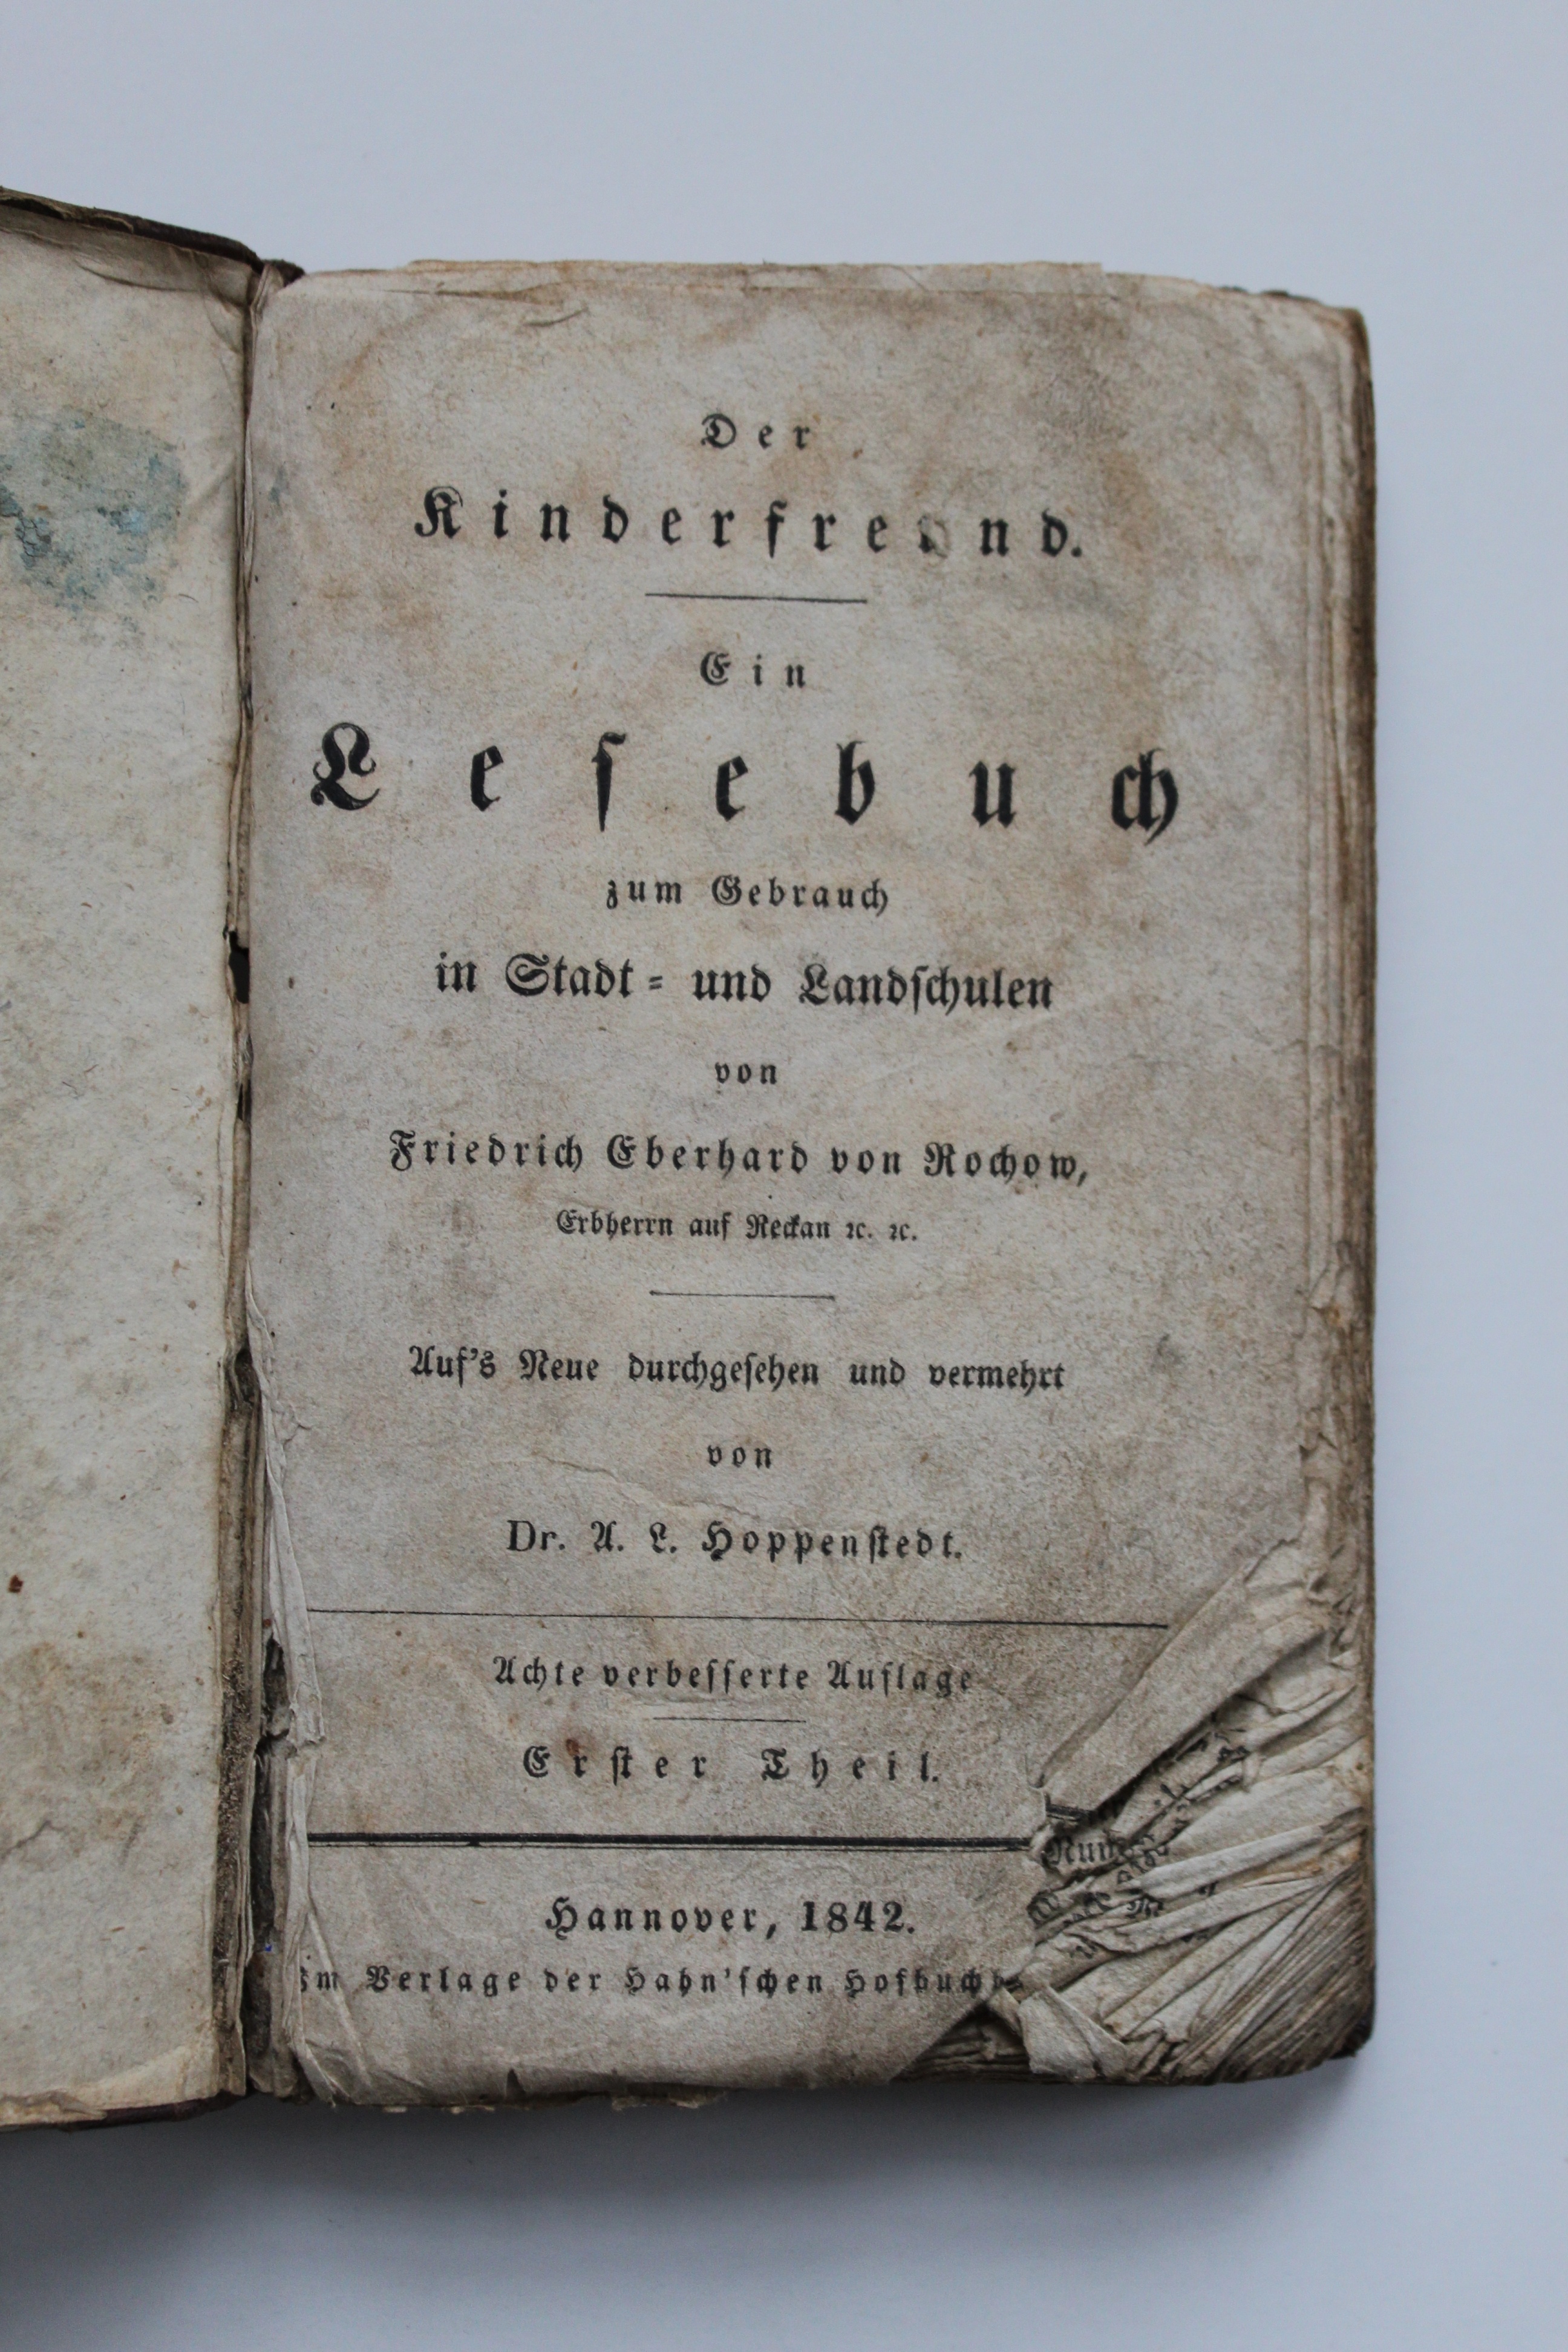 Rochow, Friedrich Eberhard von. Der Kinderfreund. Ein Lesebuch zum Gebrauch in Stadt- und Landschulen. F. E. von Rochow. Hannover, 1842 (Reckahner Museen CC BY-NC-SA)